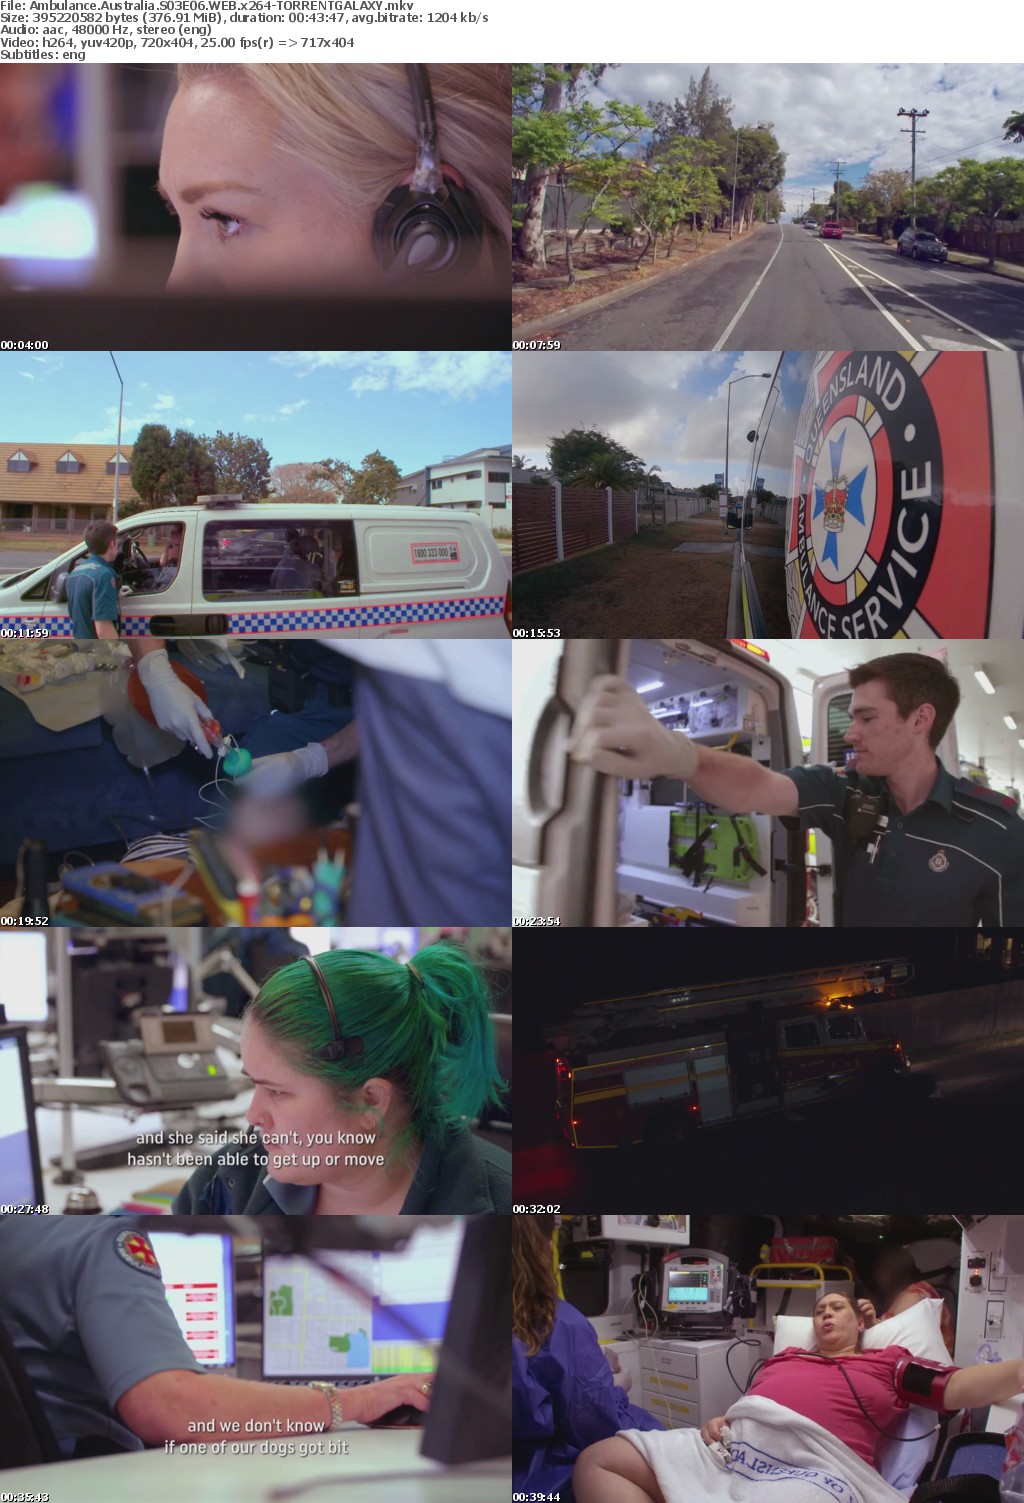 Ambulance Australia S03E06 WEB x264-GALAXY